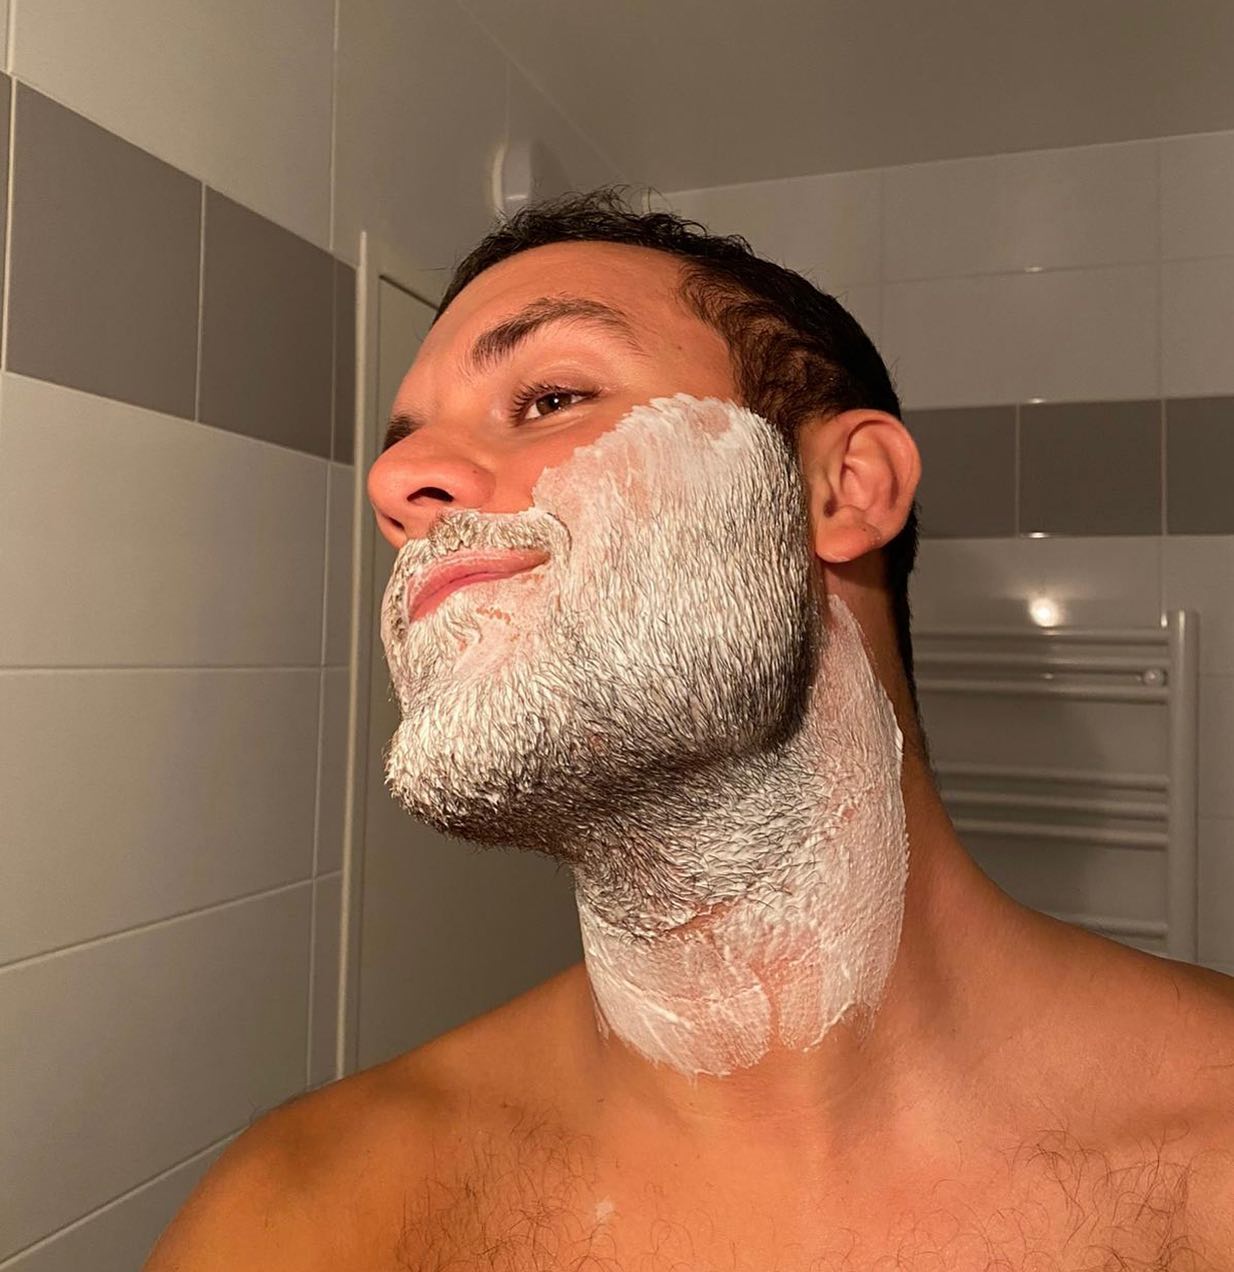 Cette sensation avant de tout raser 🪒 

Qui a déjà eu l’envie de faire un changement radical en passant de la barbe à un rasage à blanc ? 🤓

#bigmoustache #shaving #shaved #rasage #beard #rasageablanc #grooming #changement